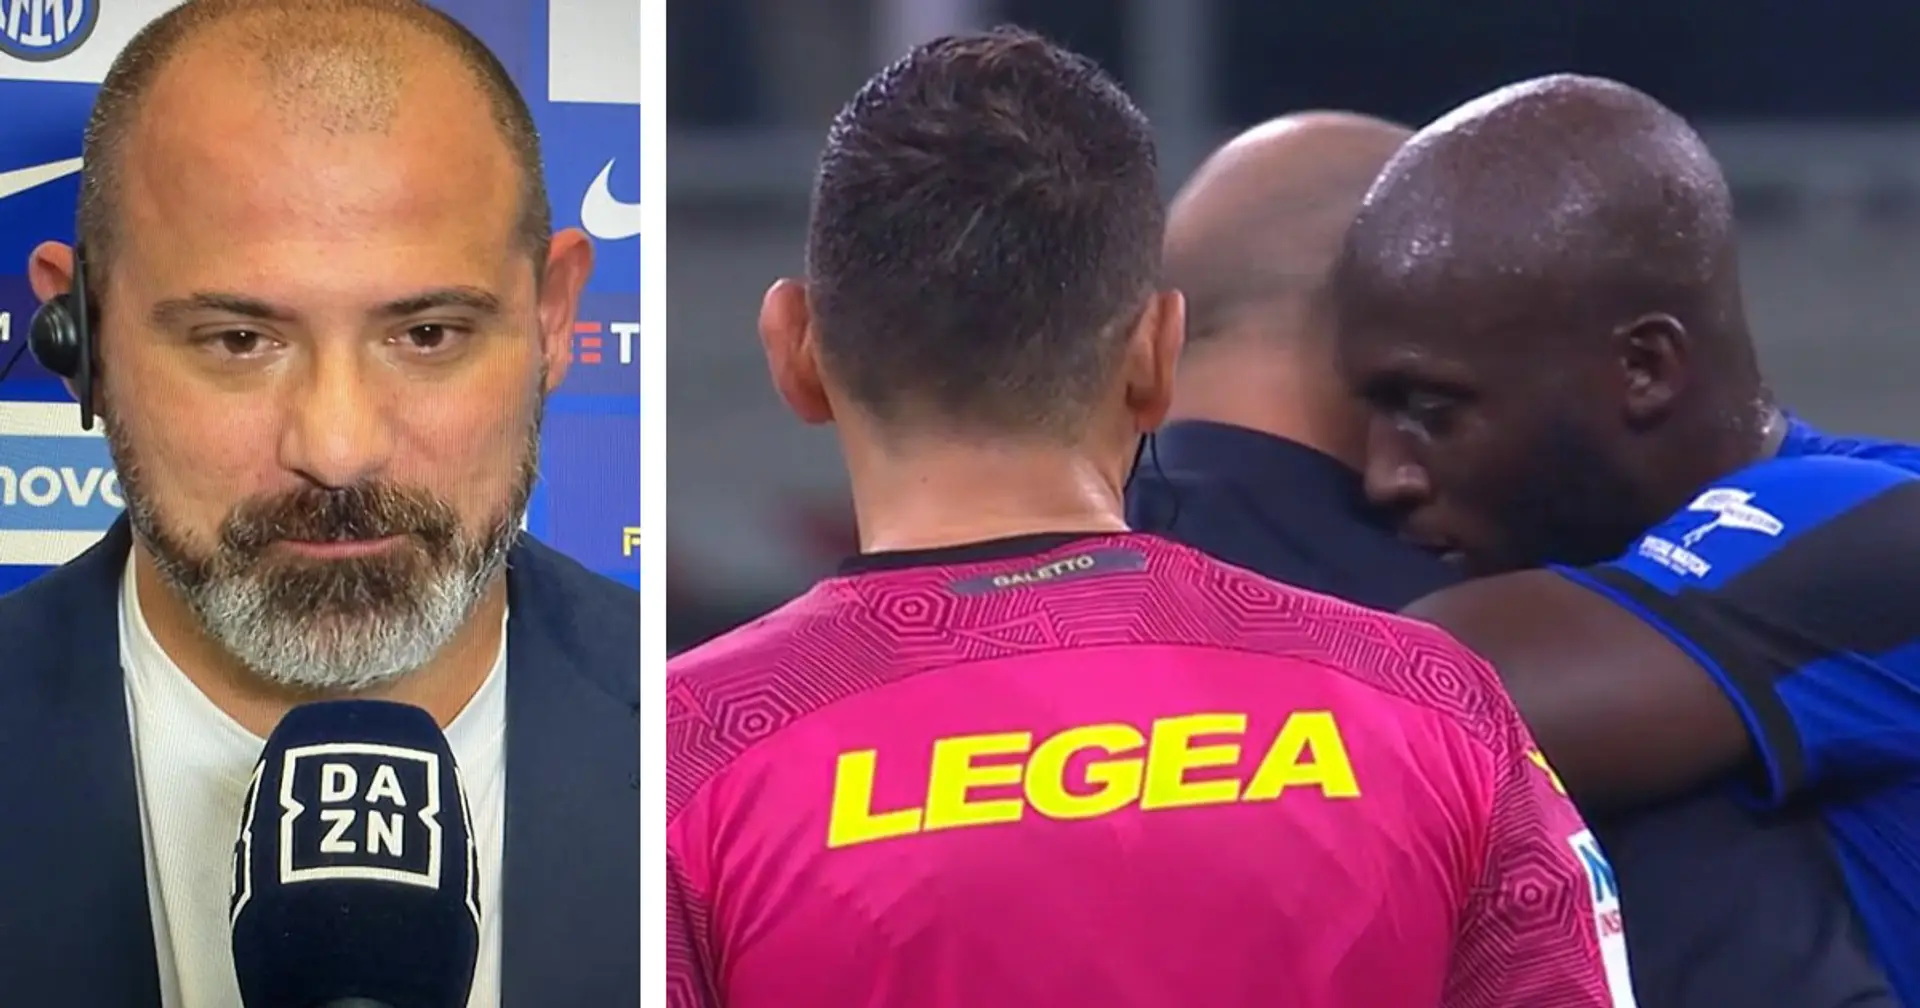 Lungo abbraccio tra Stankovic e Lukaku al fischio finale: l'ex Inter svela un retroscena sull'amicizia con Big Rom